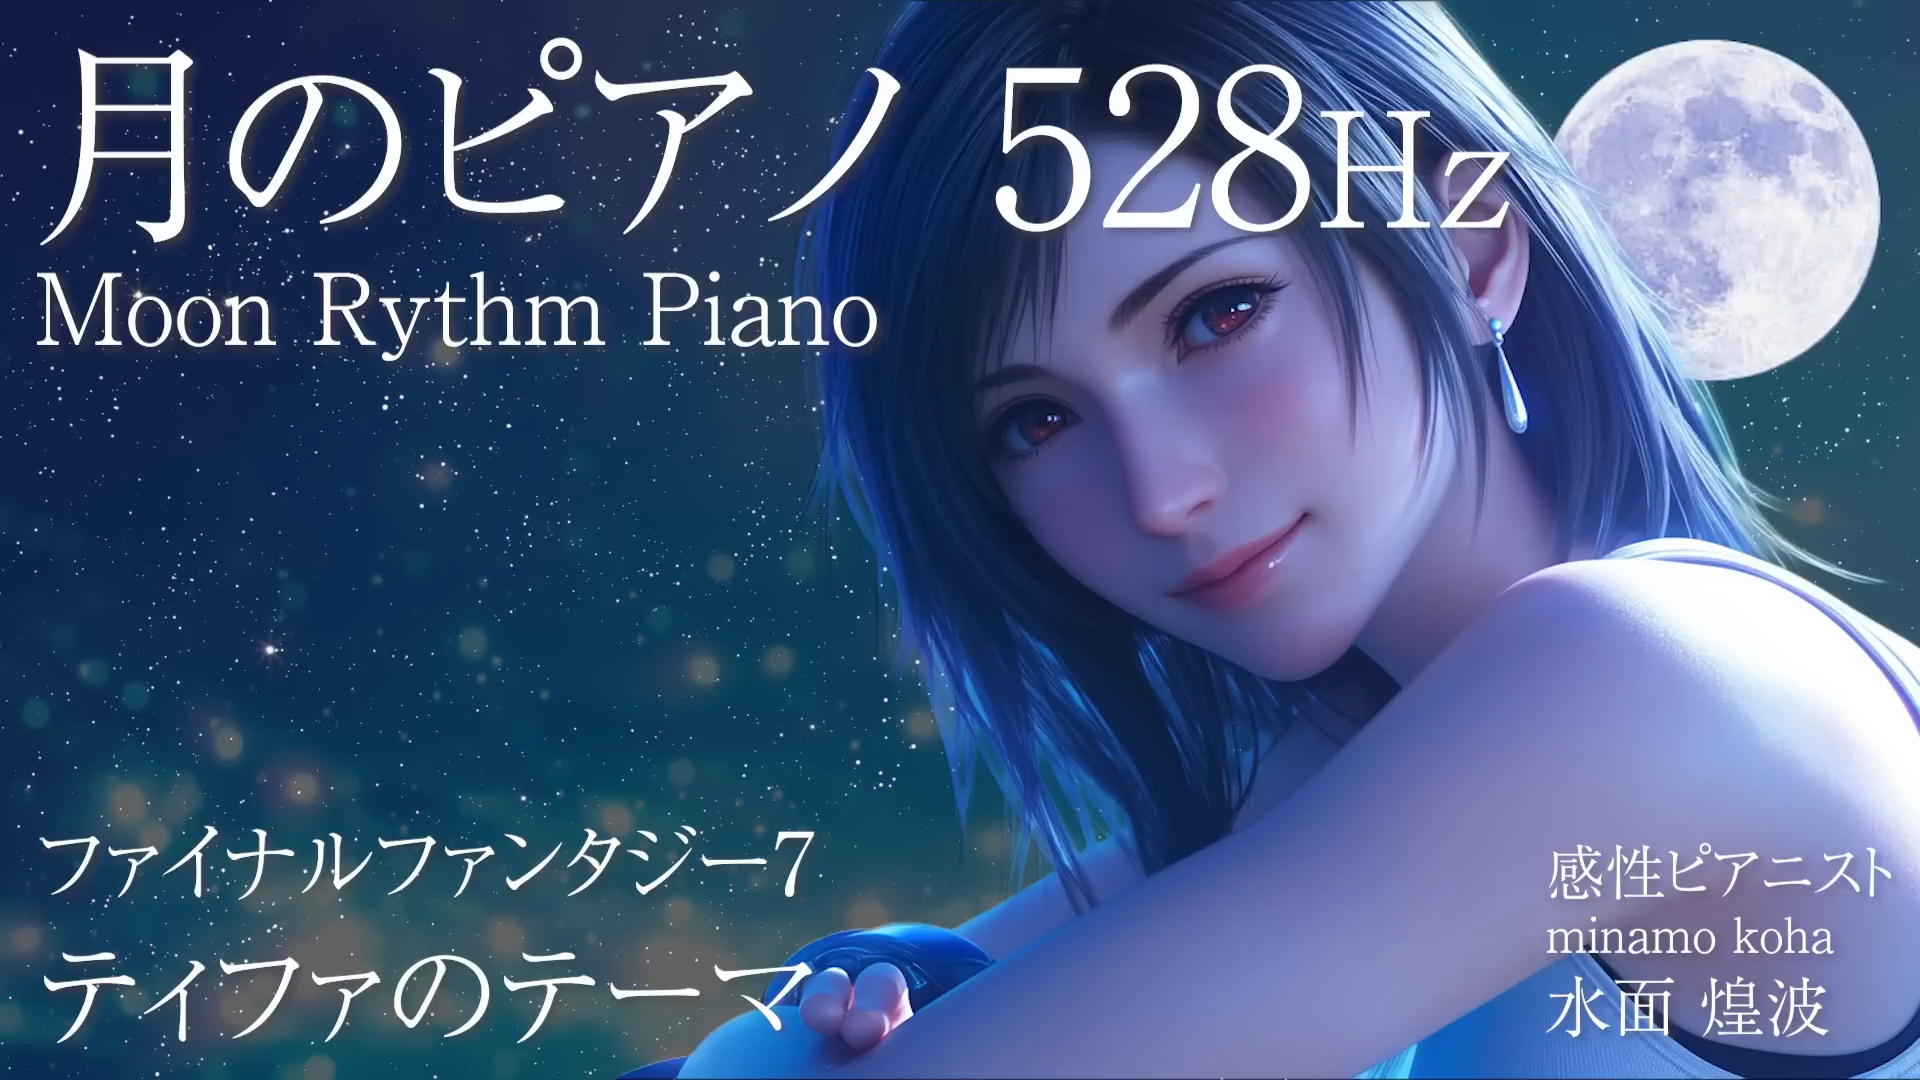 【治愈钢琴曲】FF7丨Tifa's Theme丨528Hz 月之旋律钢琴曲丨纯享